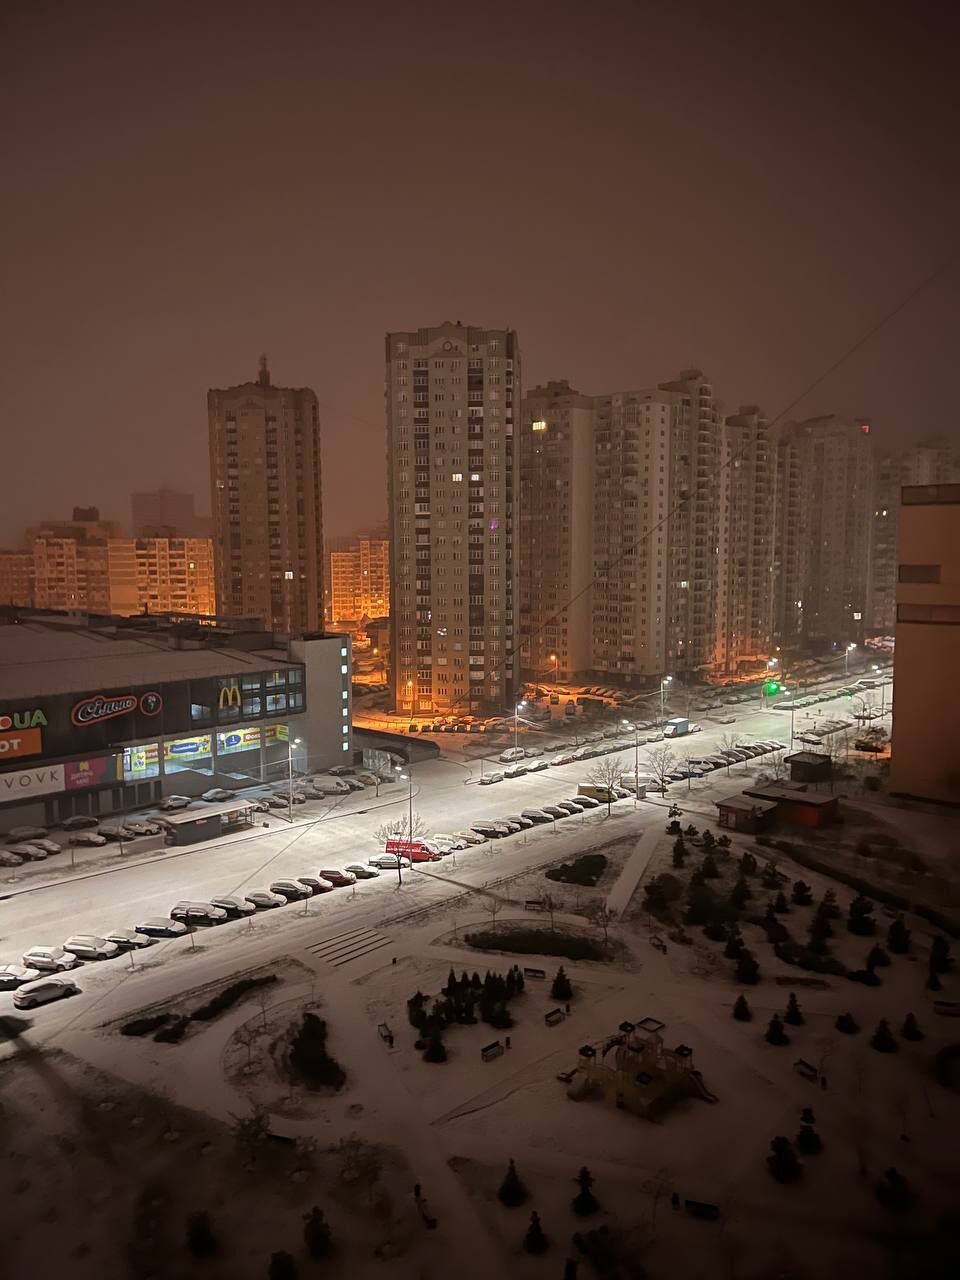 В Киев пришла настоящая зима: дороги засыпало снегом, водителей предупредили о гололедице. Фото и видео